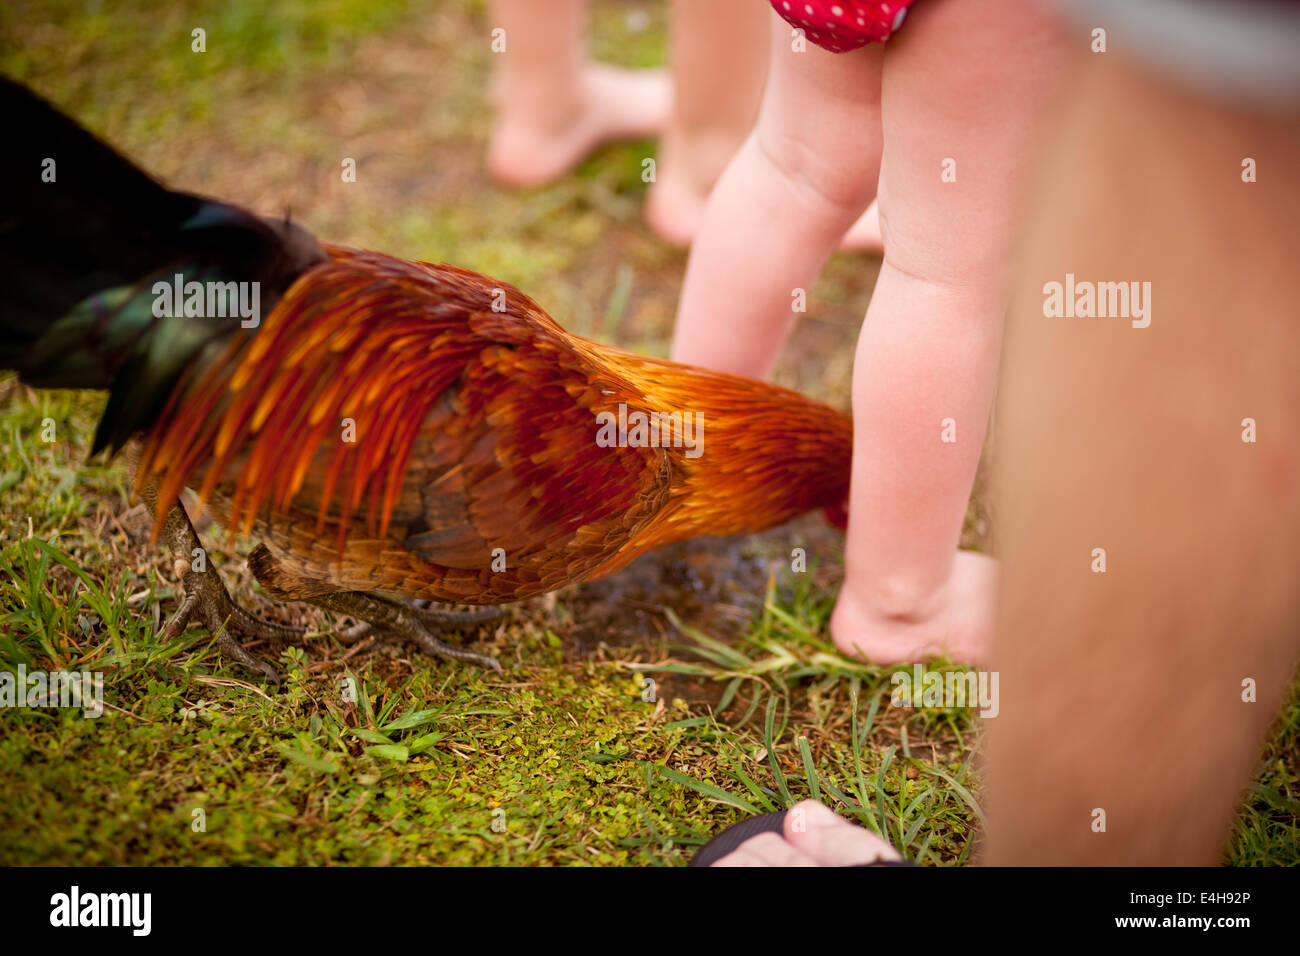 Rooster between kids legs. Stock Photo